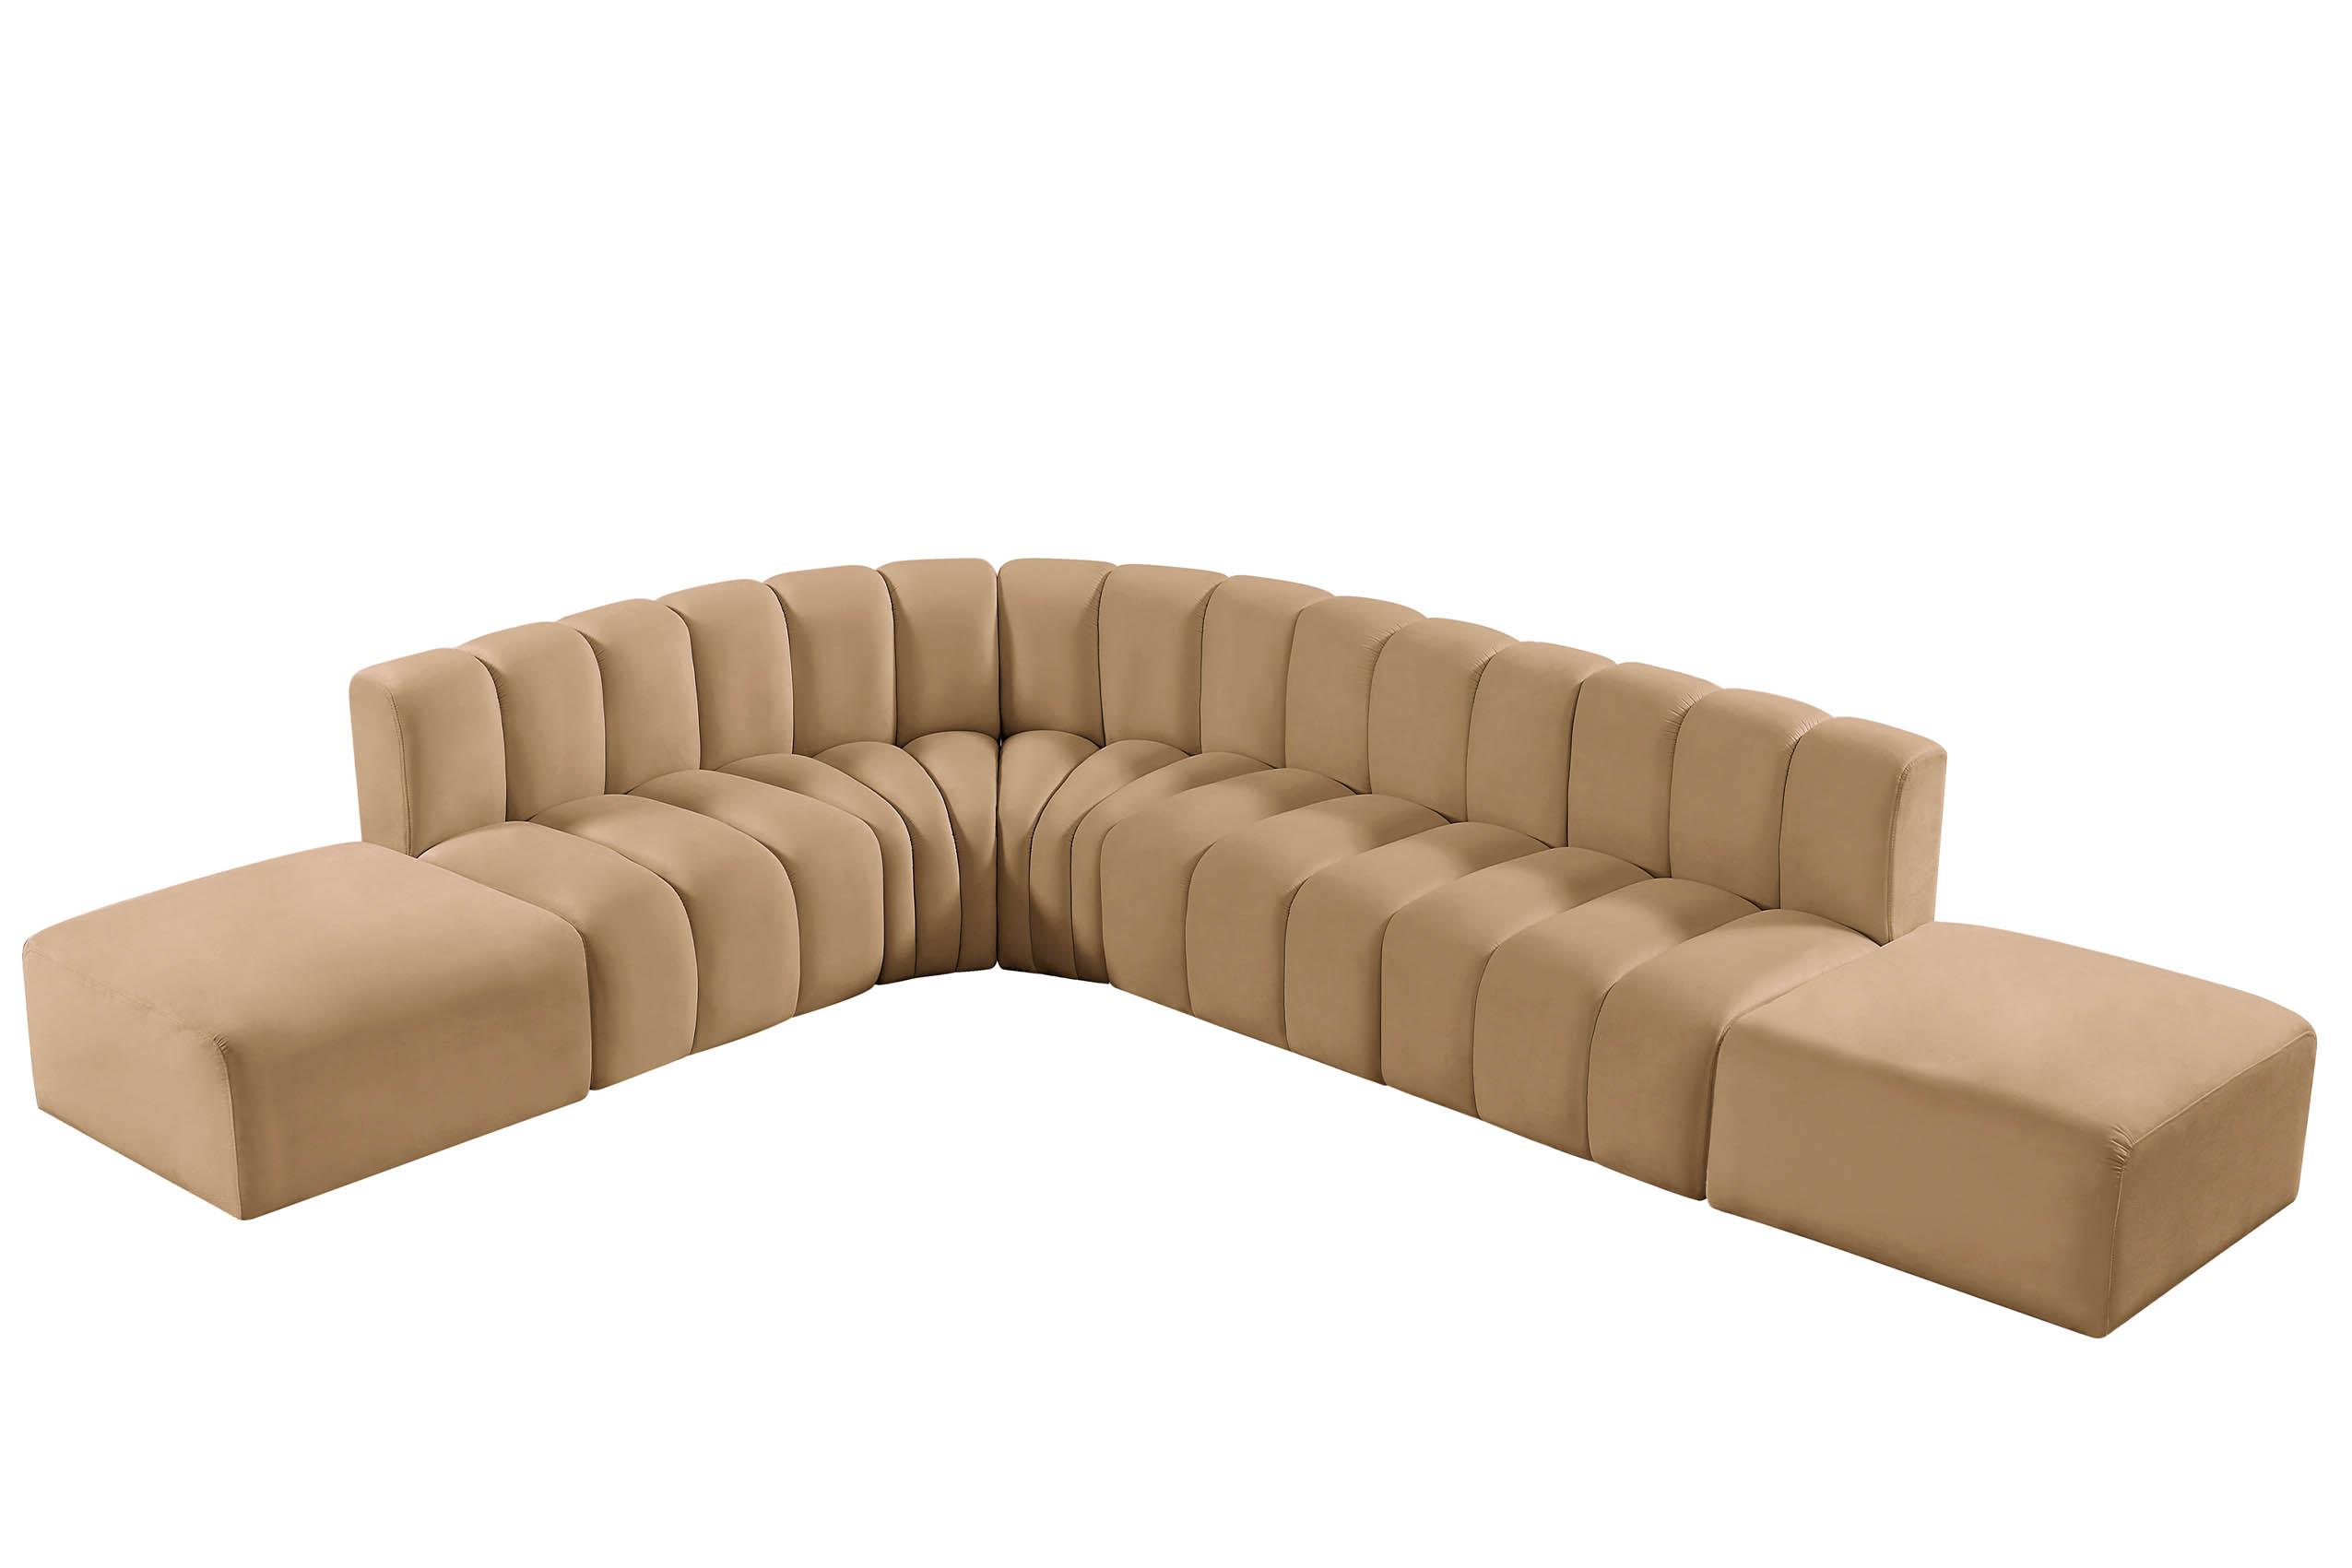 Contemporary, Modern Modular Sectional Sofa ARC 103Camel-S7A 103Camel-S7A in Camel Velvet